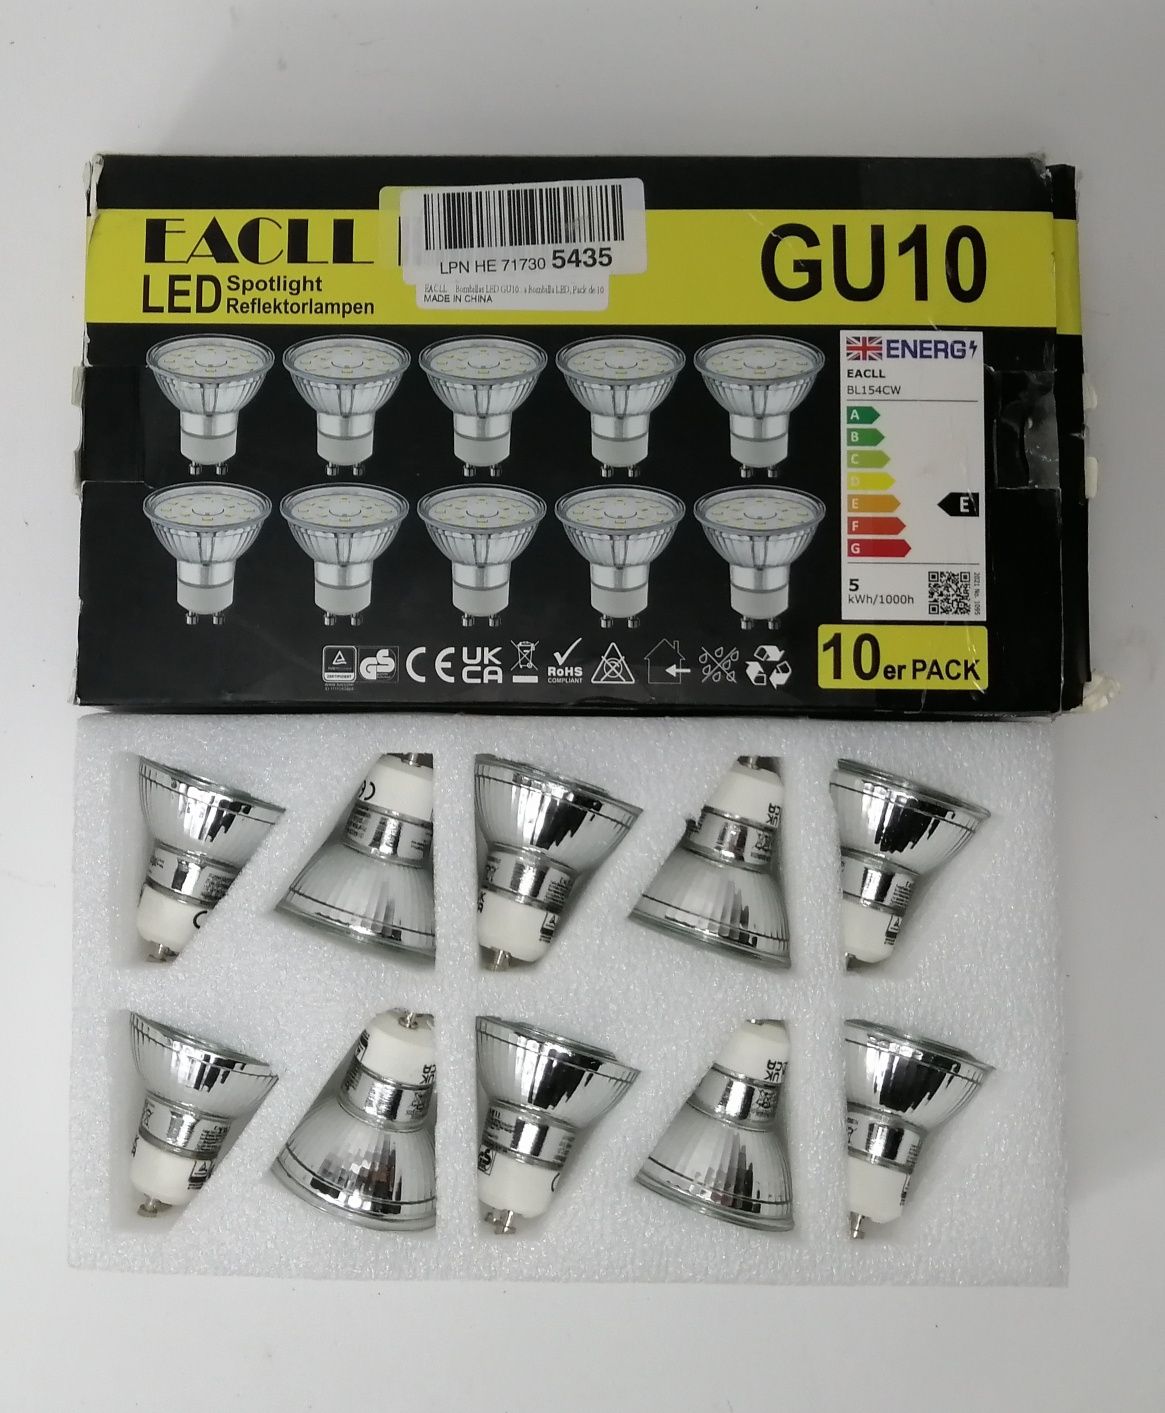 Żarówka LED EACLL GU10, 5w